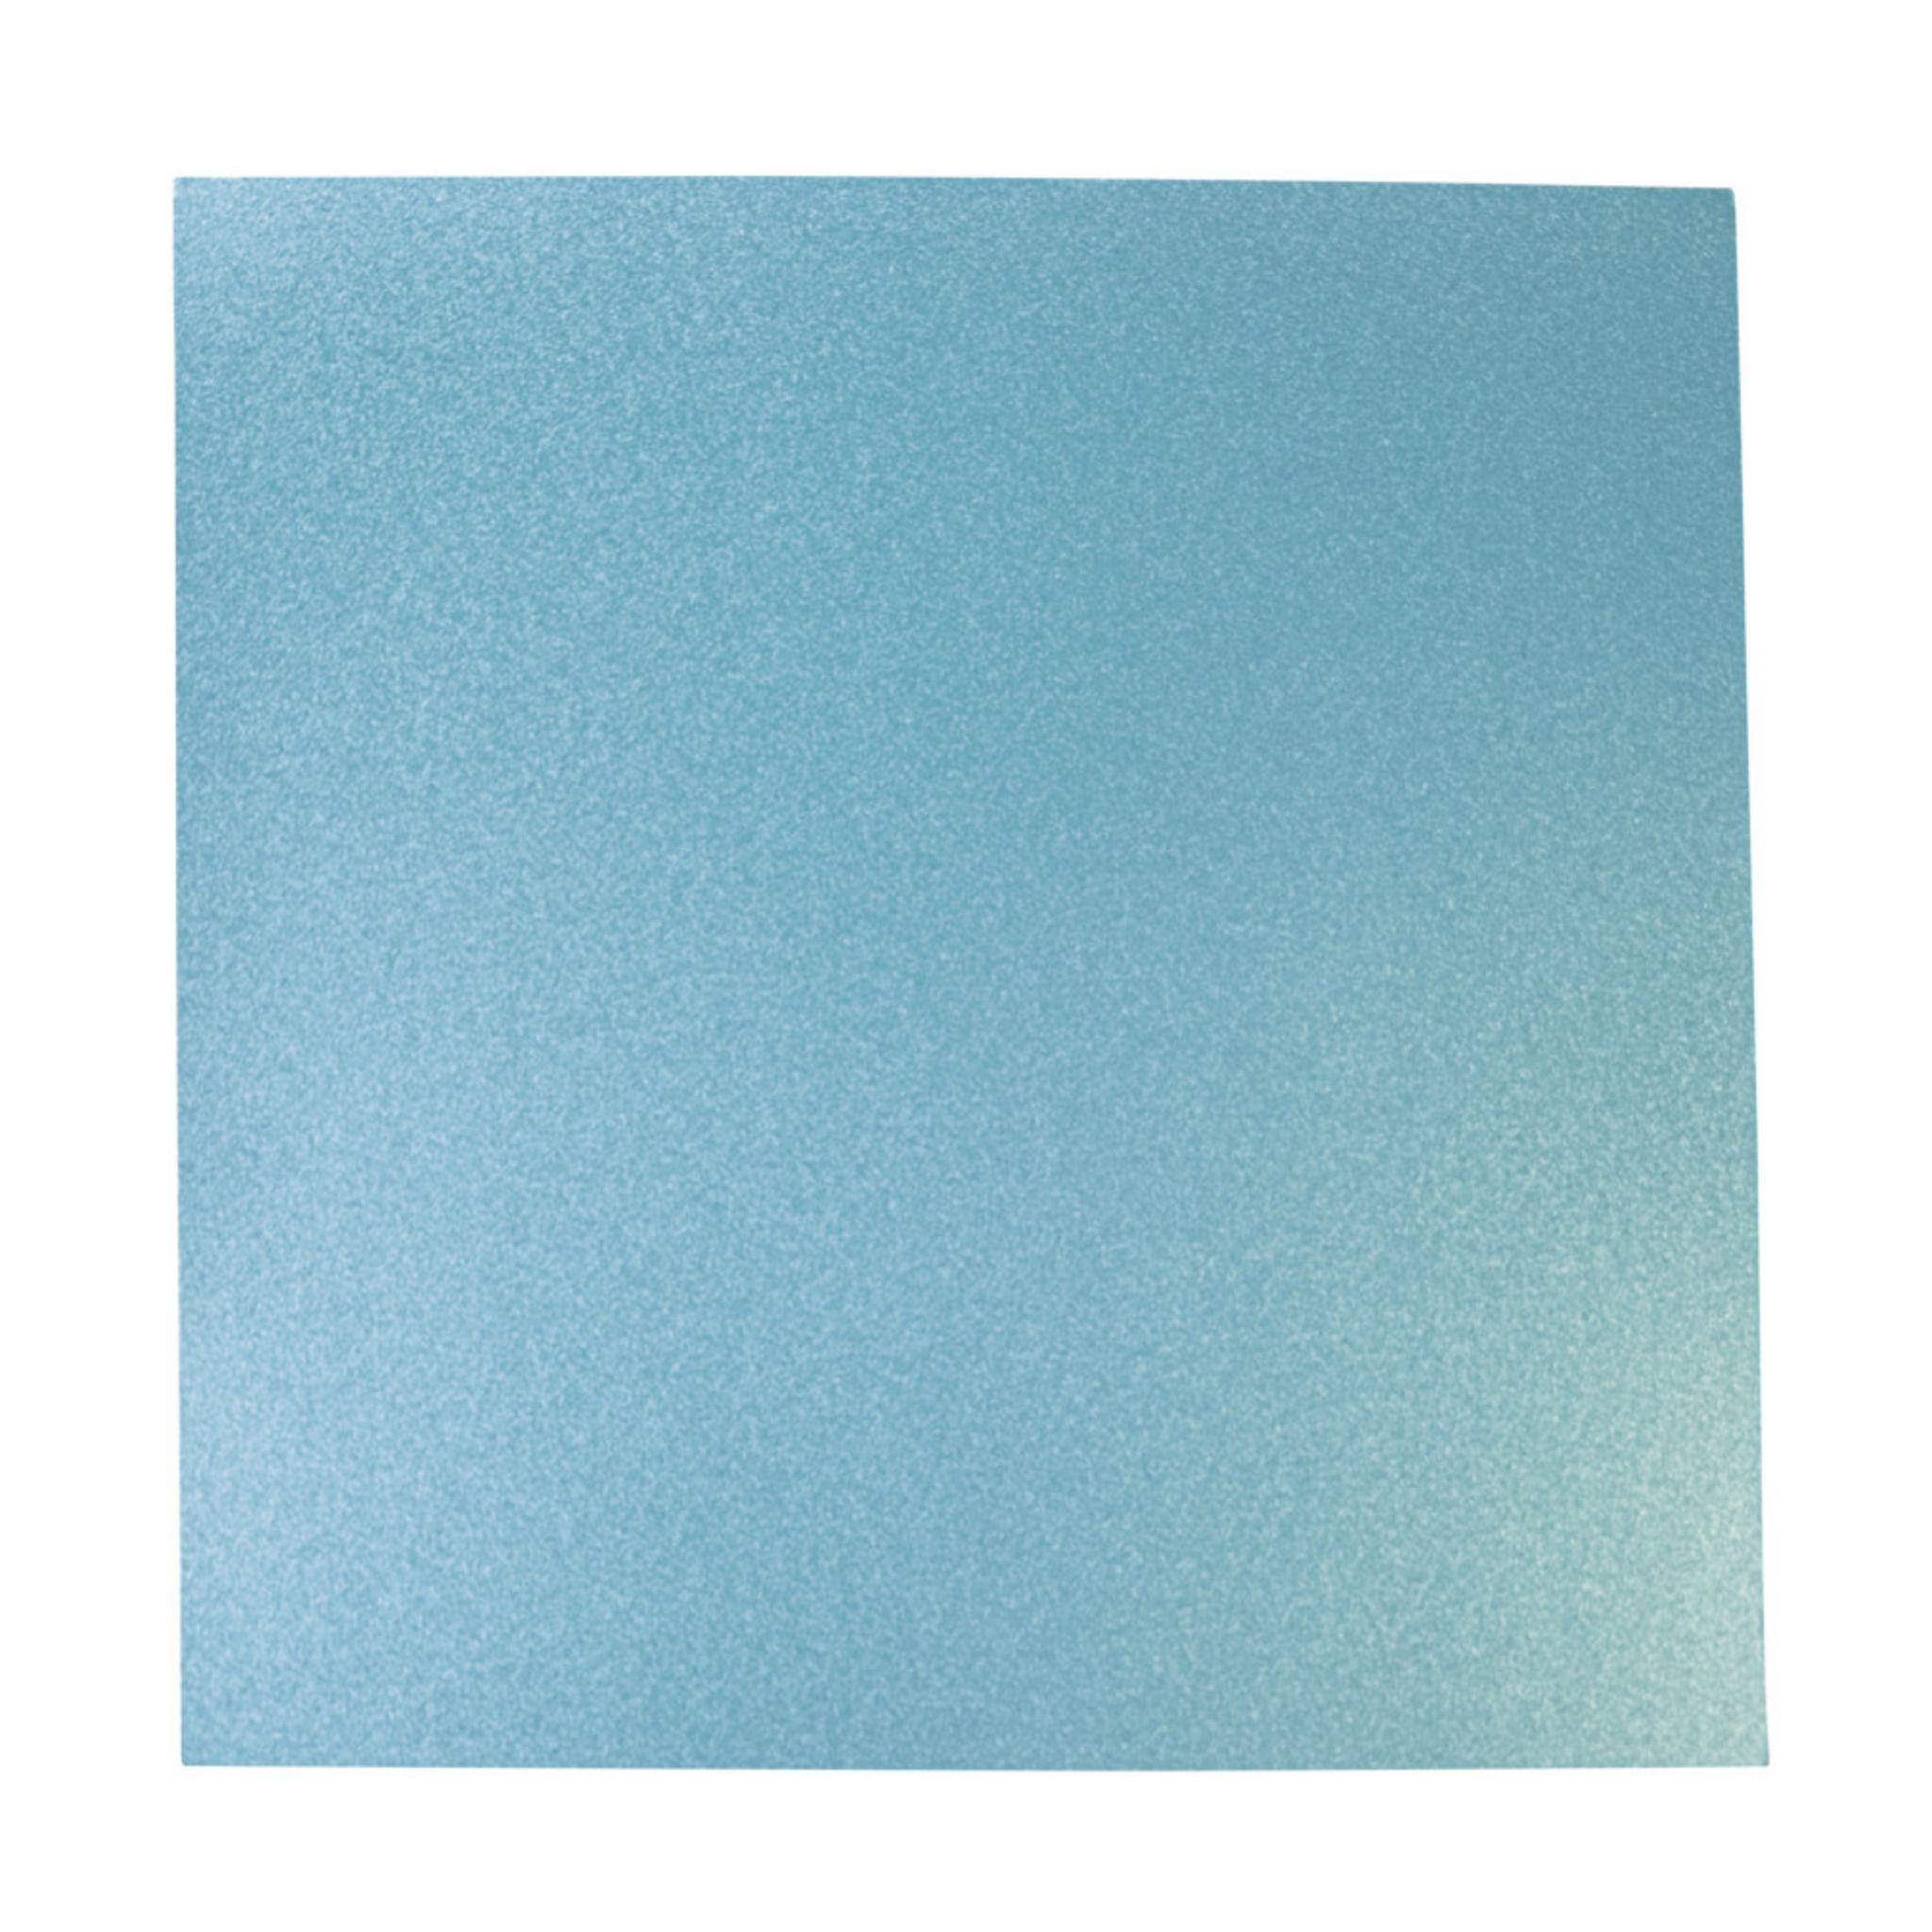 Rayher Papi.scrap. effet mét. Paillettes fines, bleu azur, 30,5x30,5cm,  210g / m² - lot de 10 feuilles pas cher 